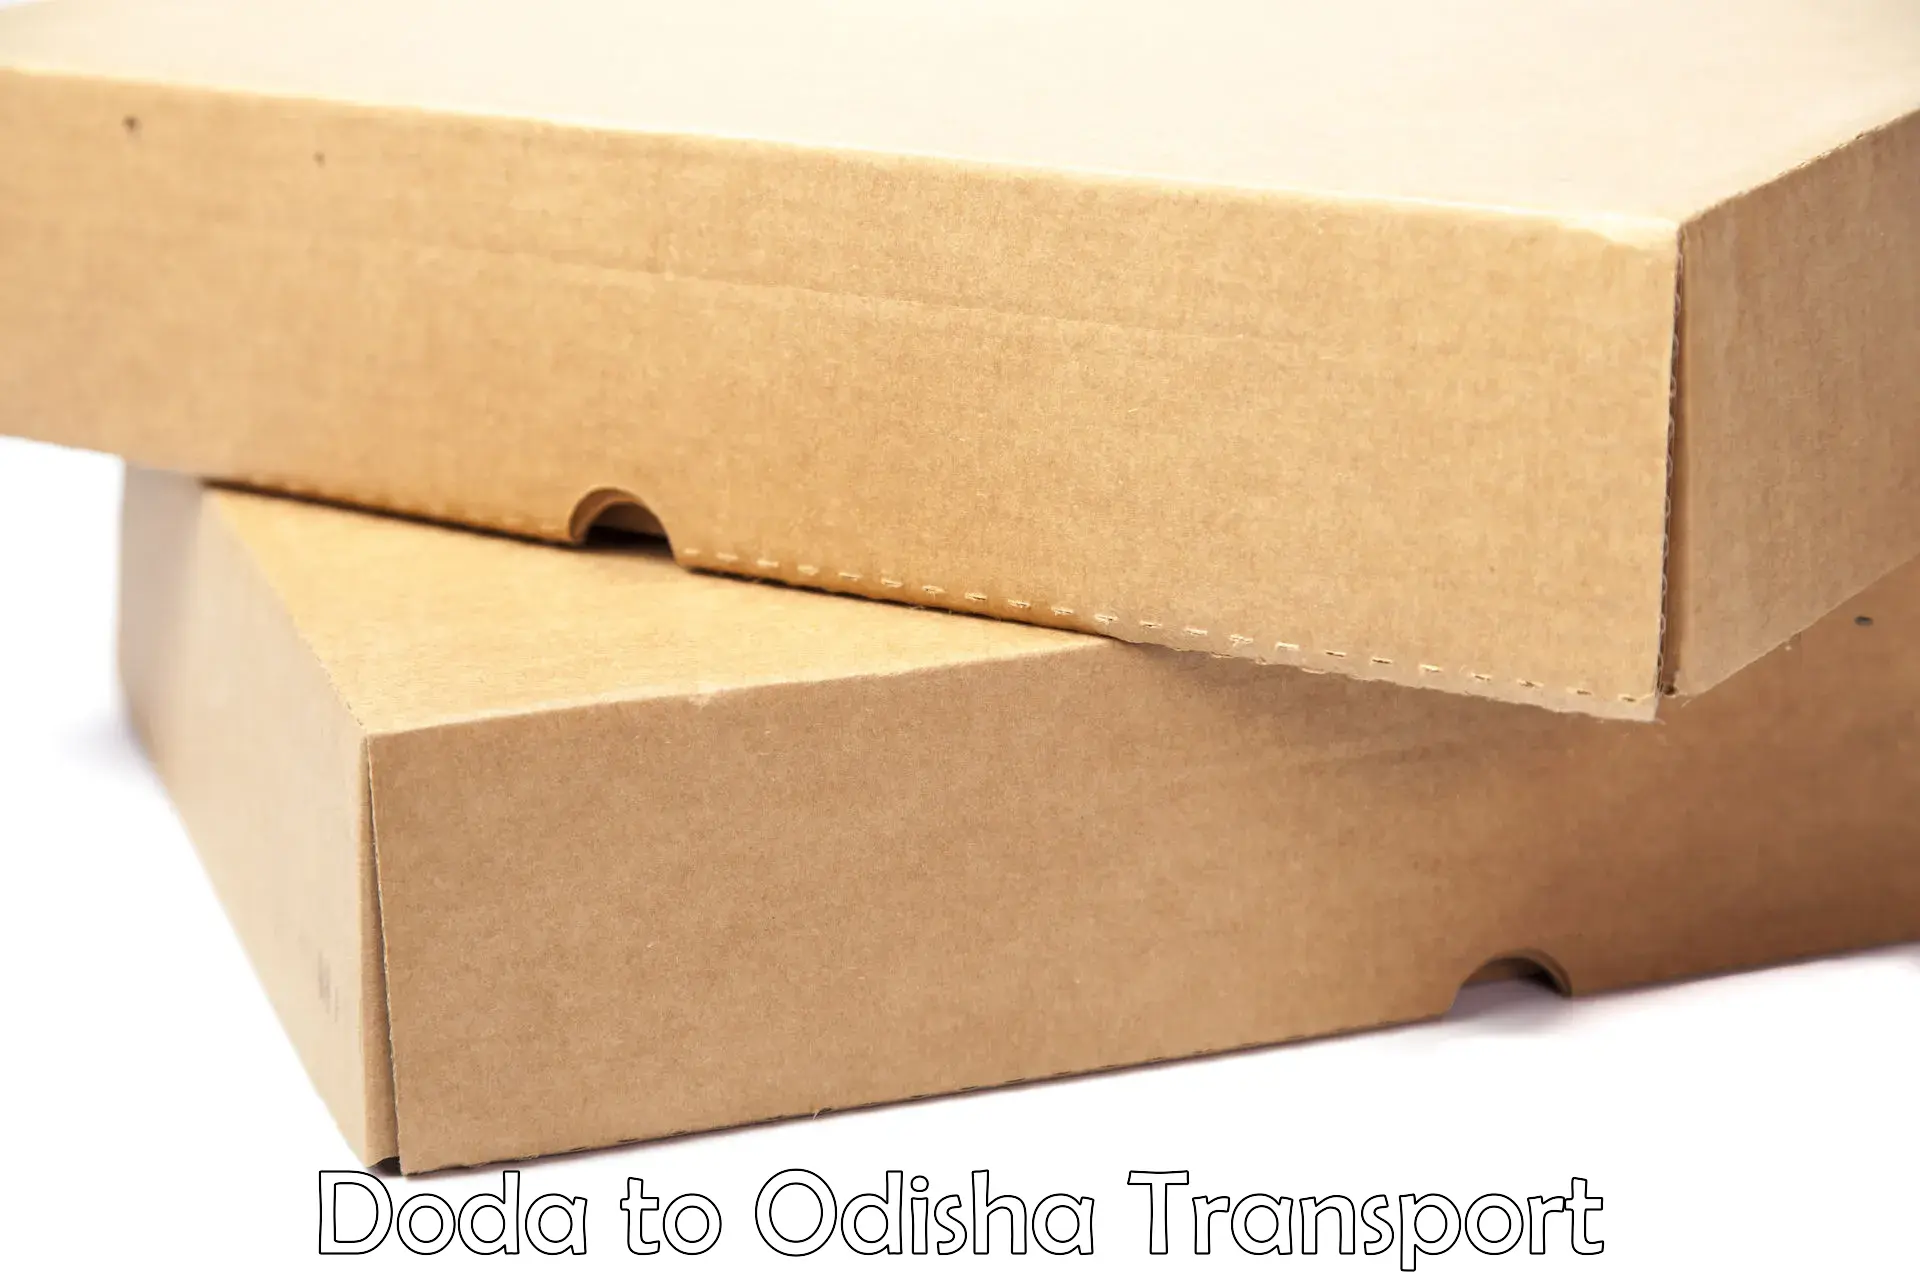 Vehicle courier services Doda to Polasara